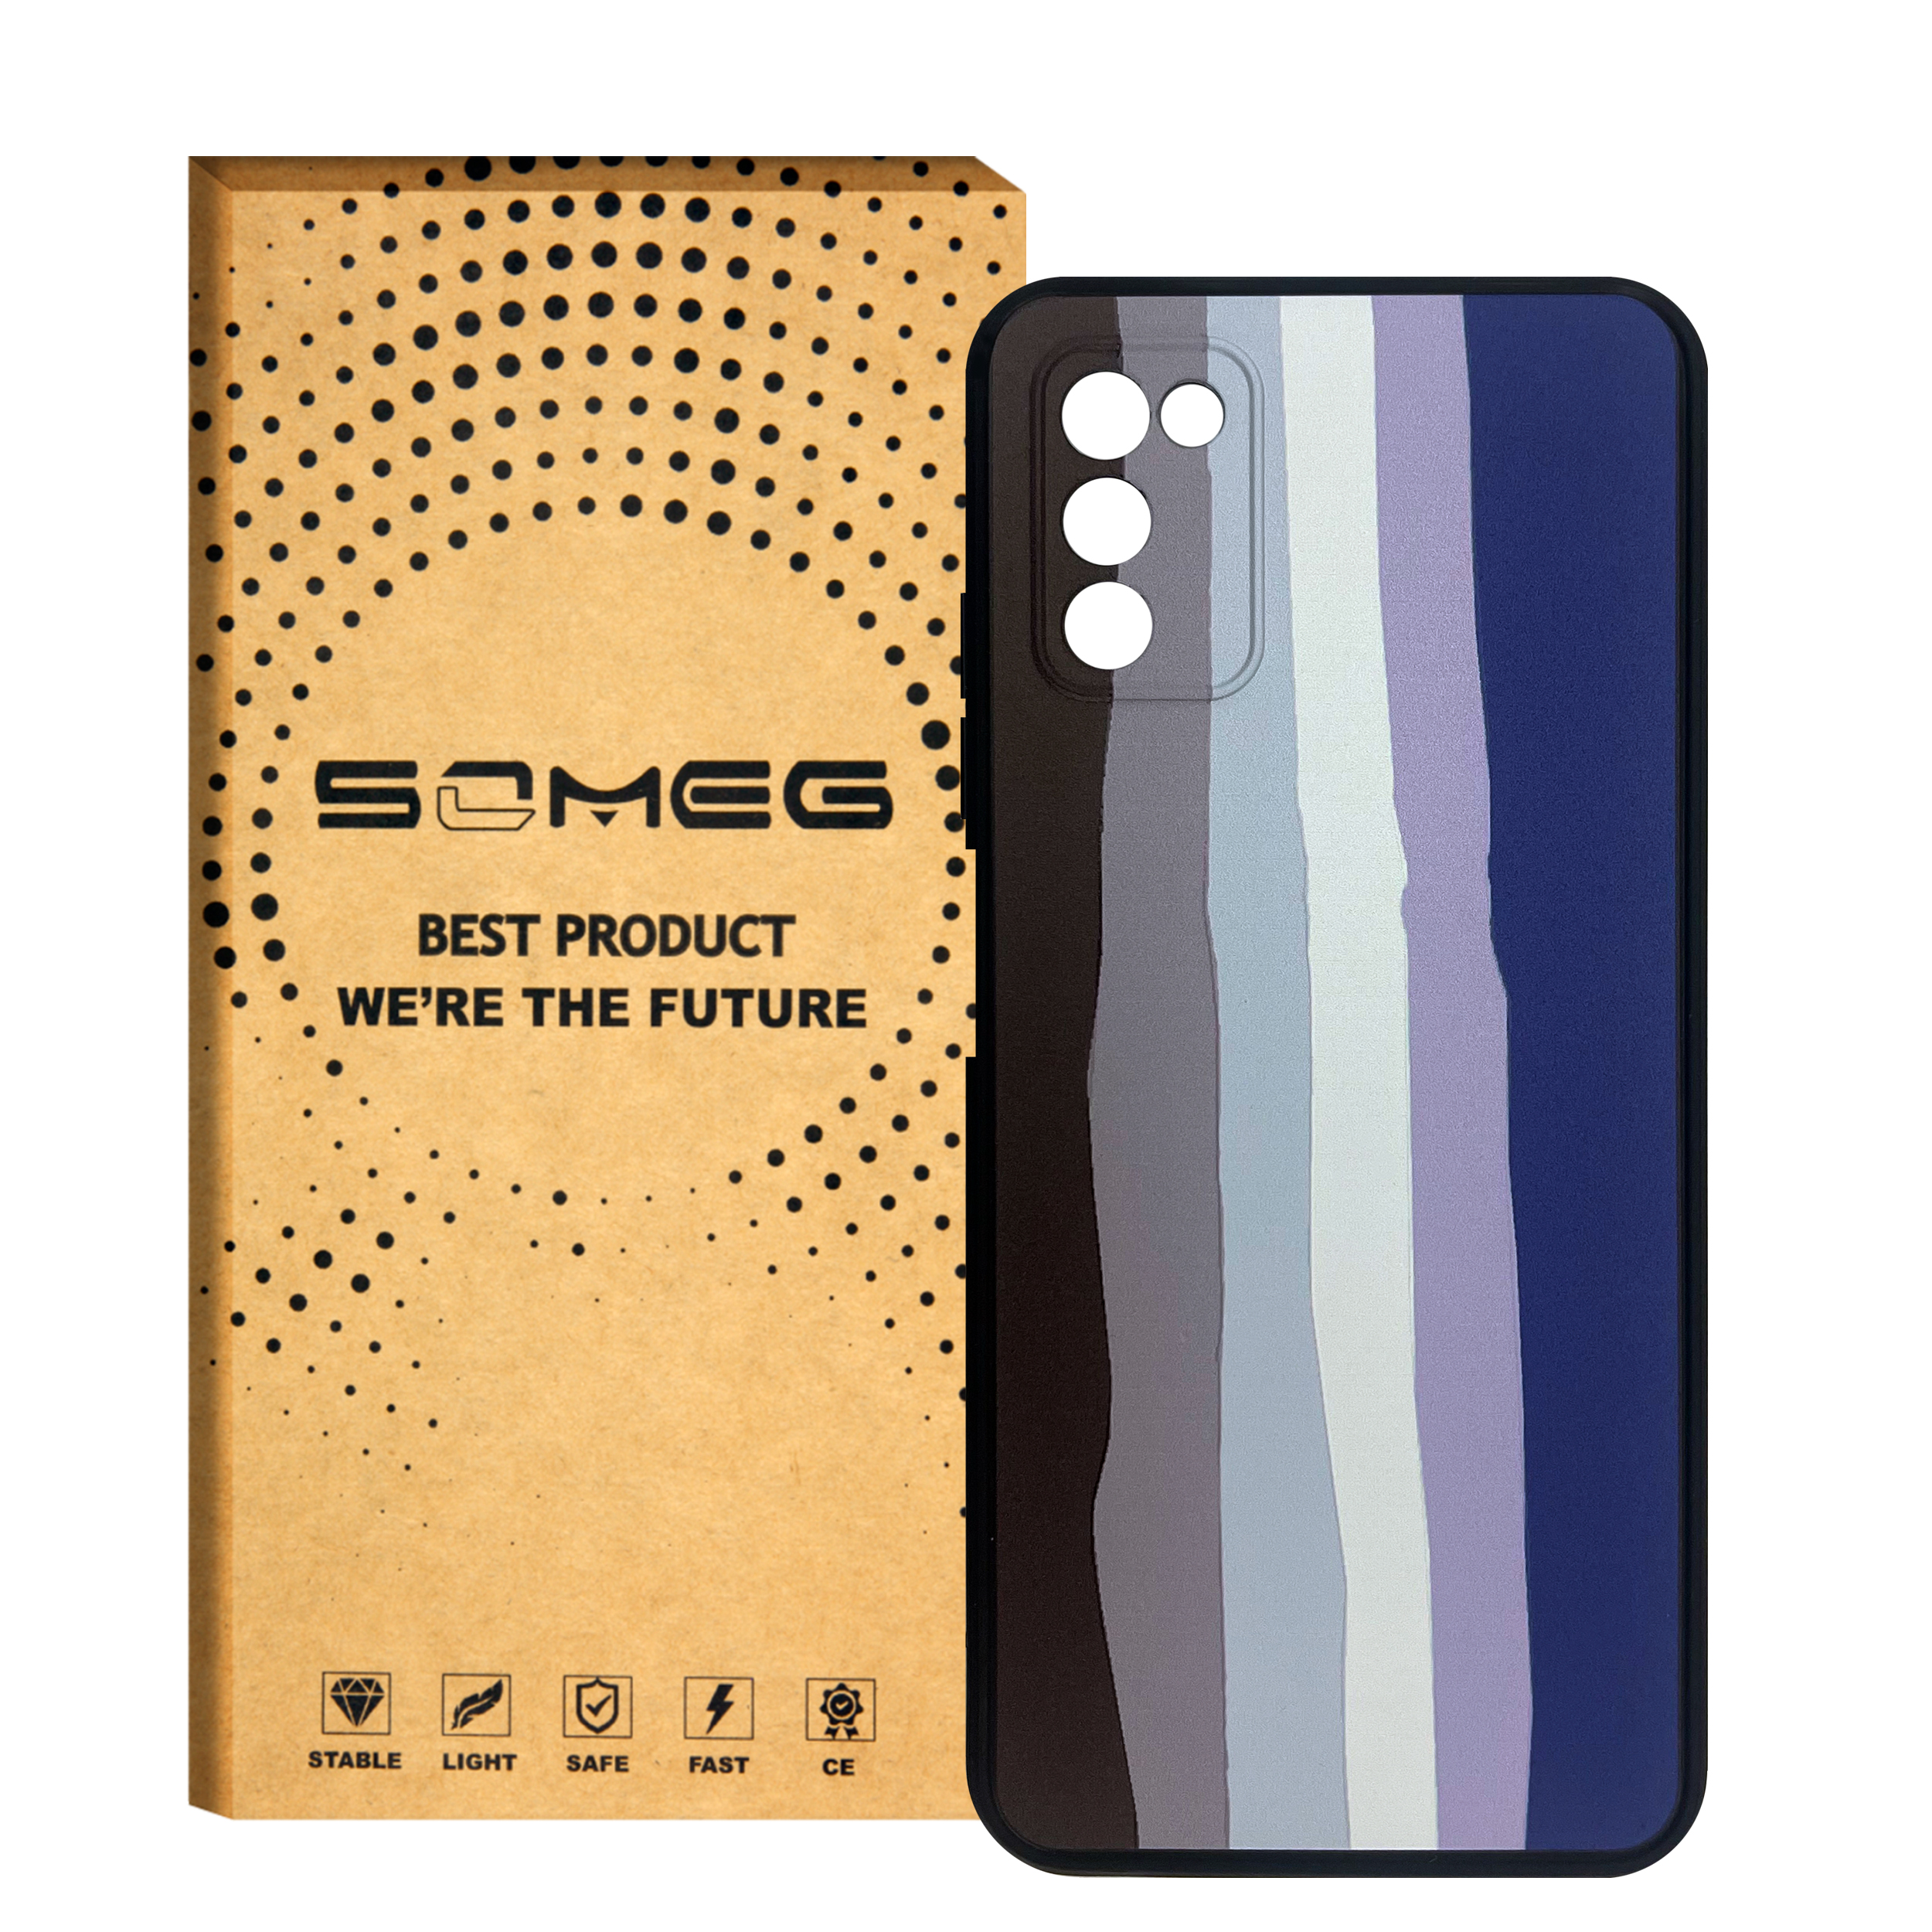 کاور سومگ مدل SMG-RainBow مناسب گوشی موبایل سامسونگ Galaxy A03s